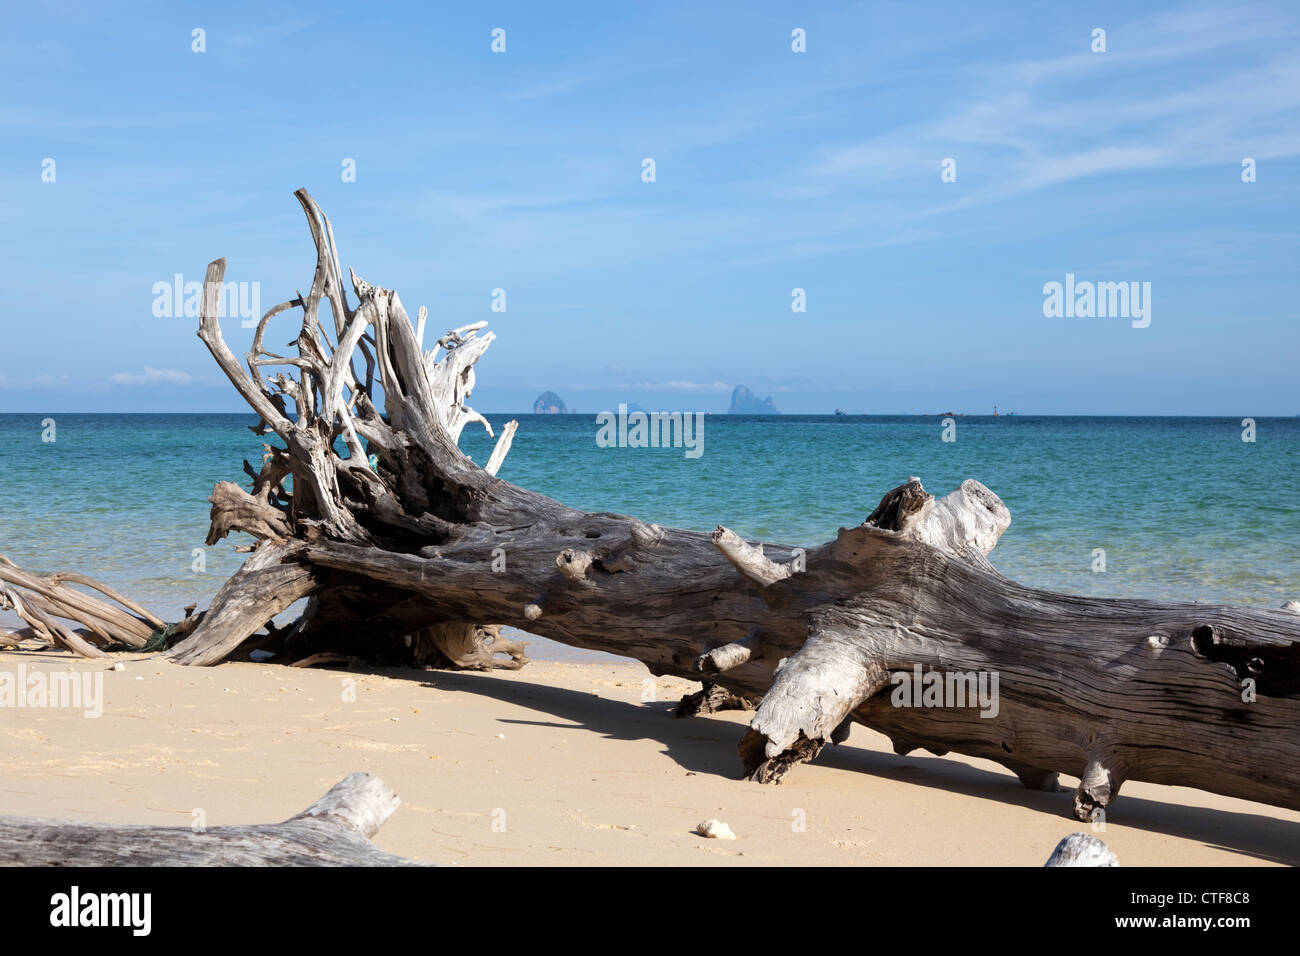 Un naturale scenic immagine presa a Bulon isola: il bolo di casuarina sradicati durante una tempesta e sinistra sulla spiaggia (Thailandia) Foto Stock